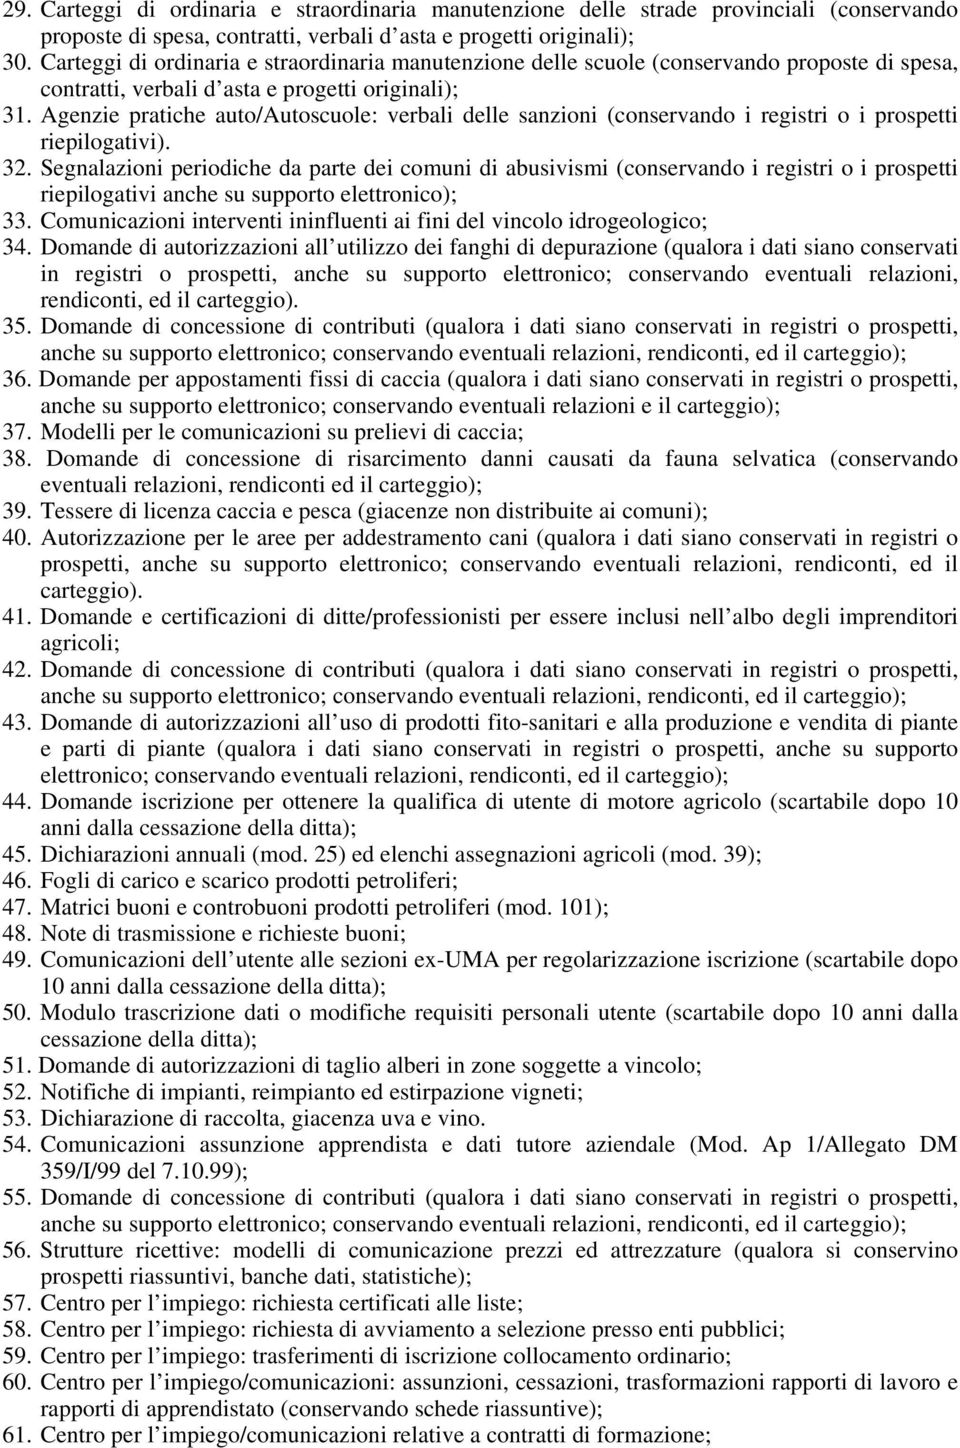 Agenzie pratiche auto/autoscuole: verbali delle sanzioni (conservando i registri o i prospetti riepilogativi). 32.